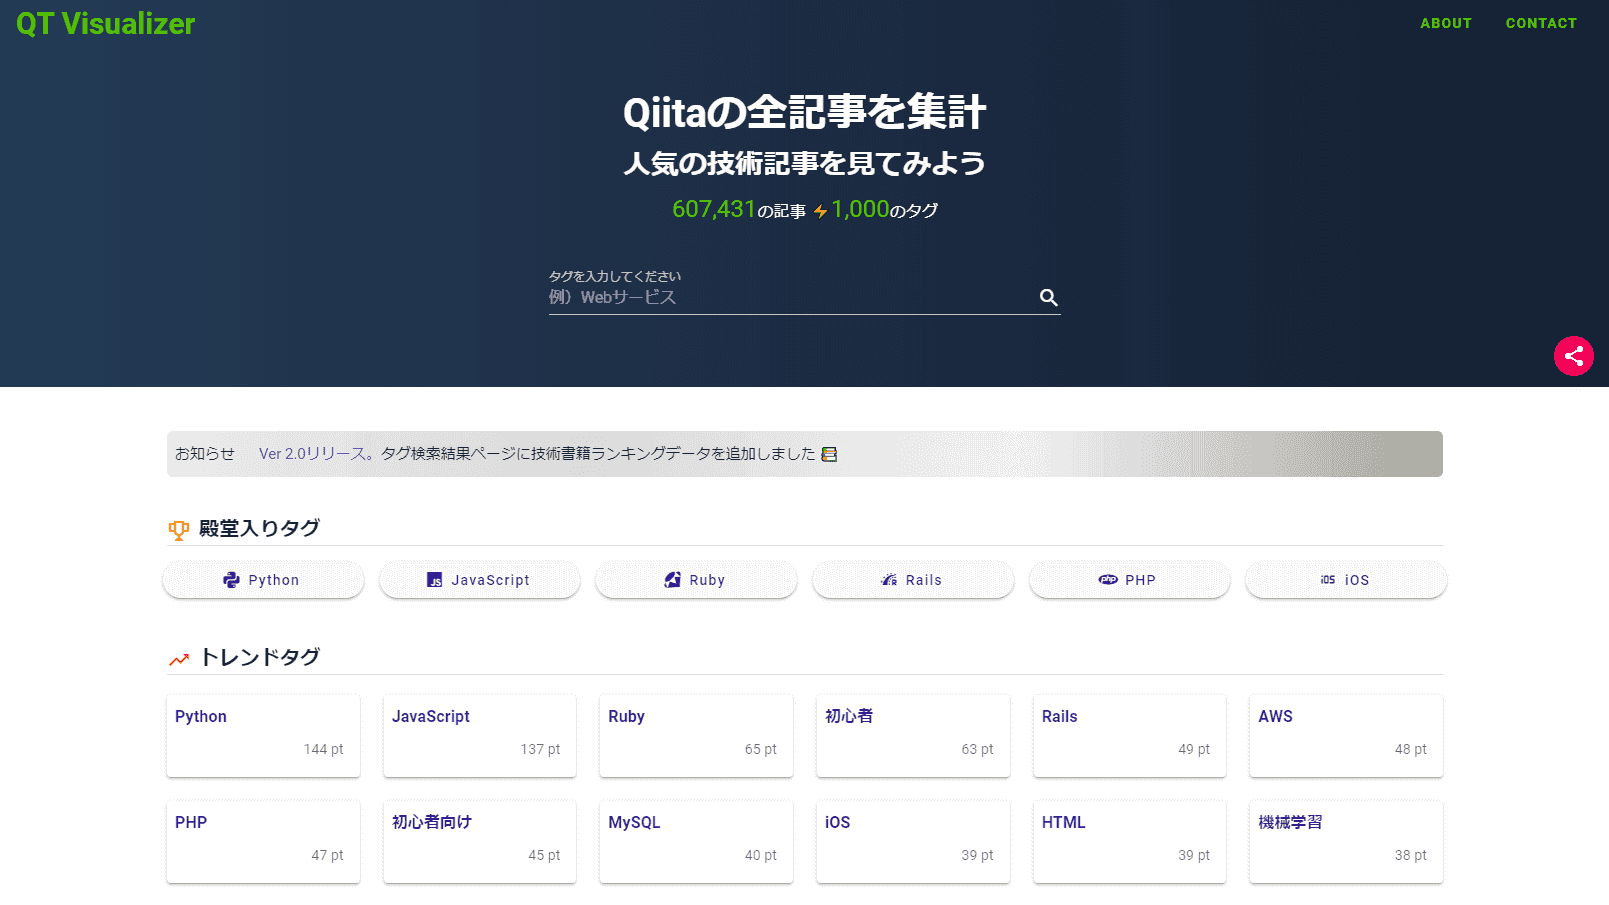 個人開発したWebサービス紹介、Qiita APIを利用した「QT Visualizer｜【Qiita技術記事のランキング】」